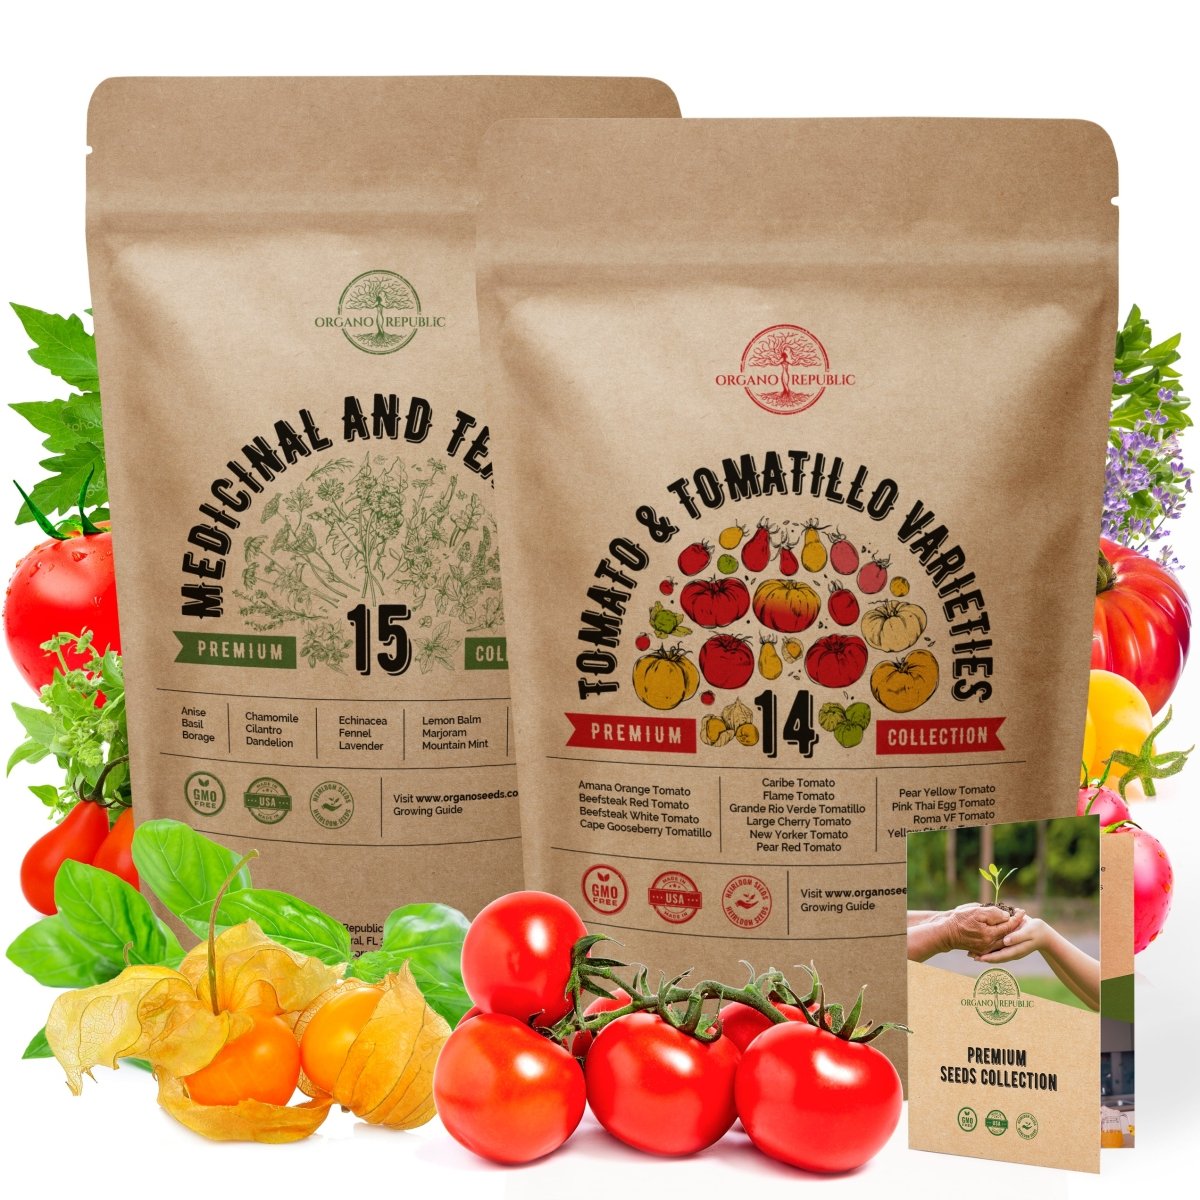 15 Medicinal Herbs & 14 Rare Tomato & Tomatillo Seeds Variety Packs Bundle - Organo Republic